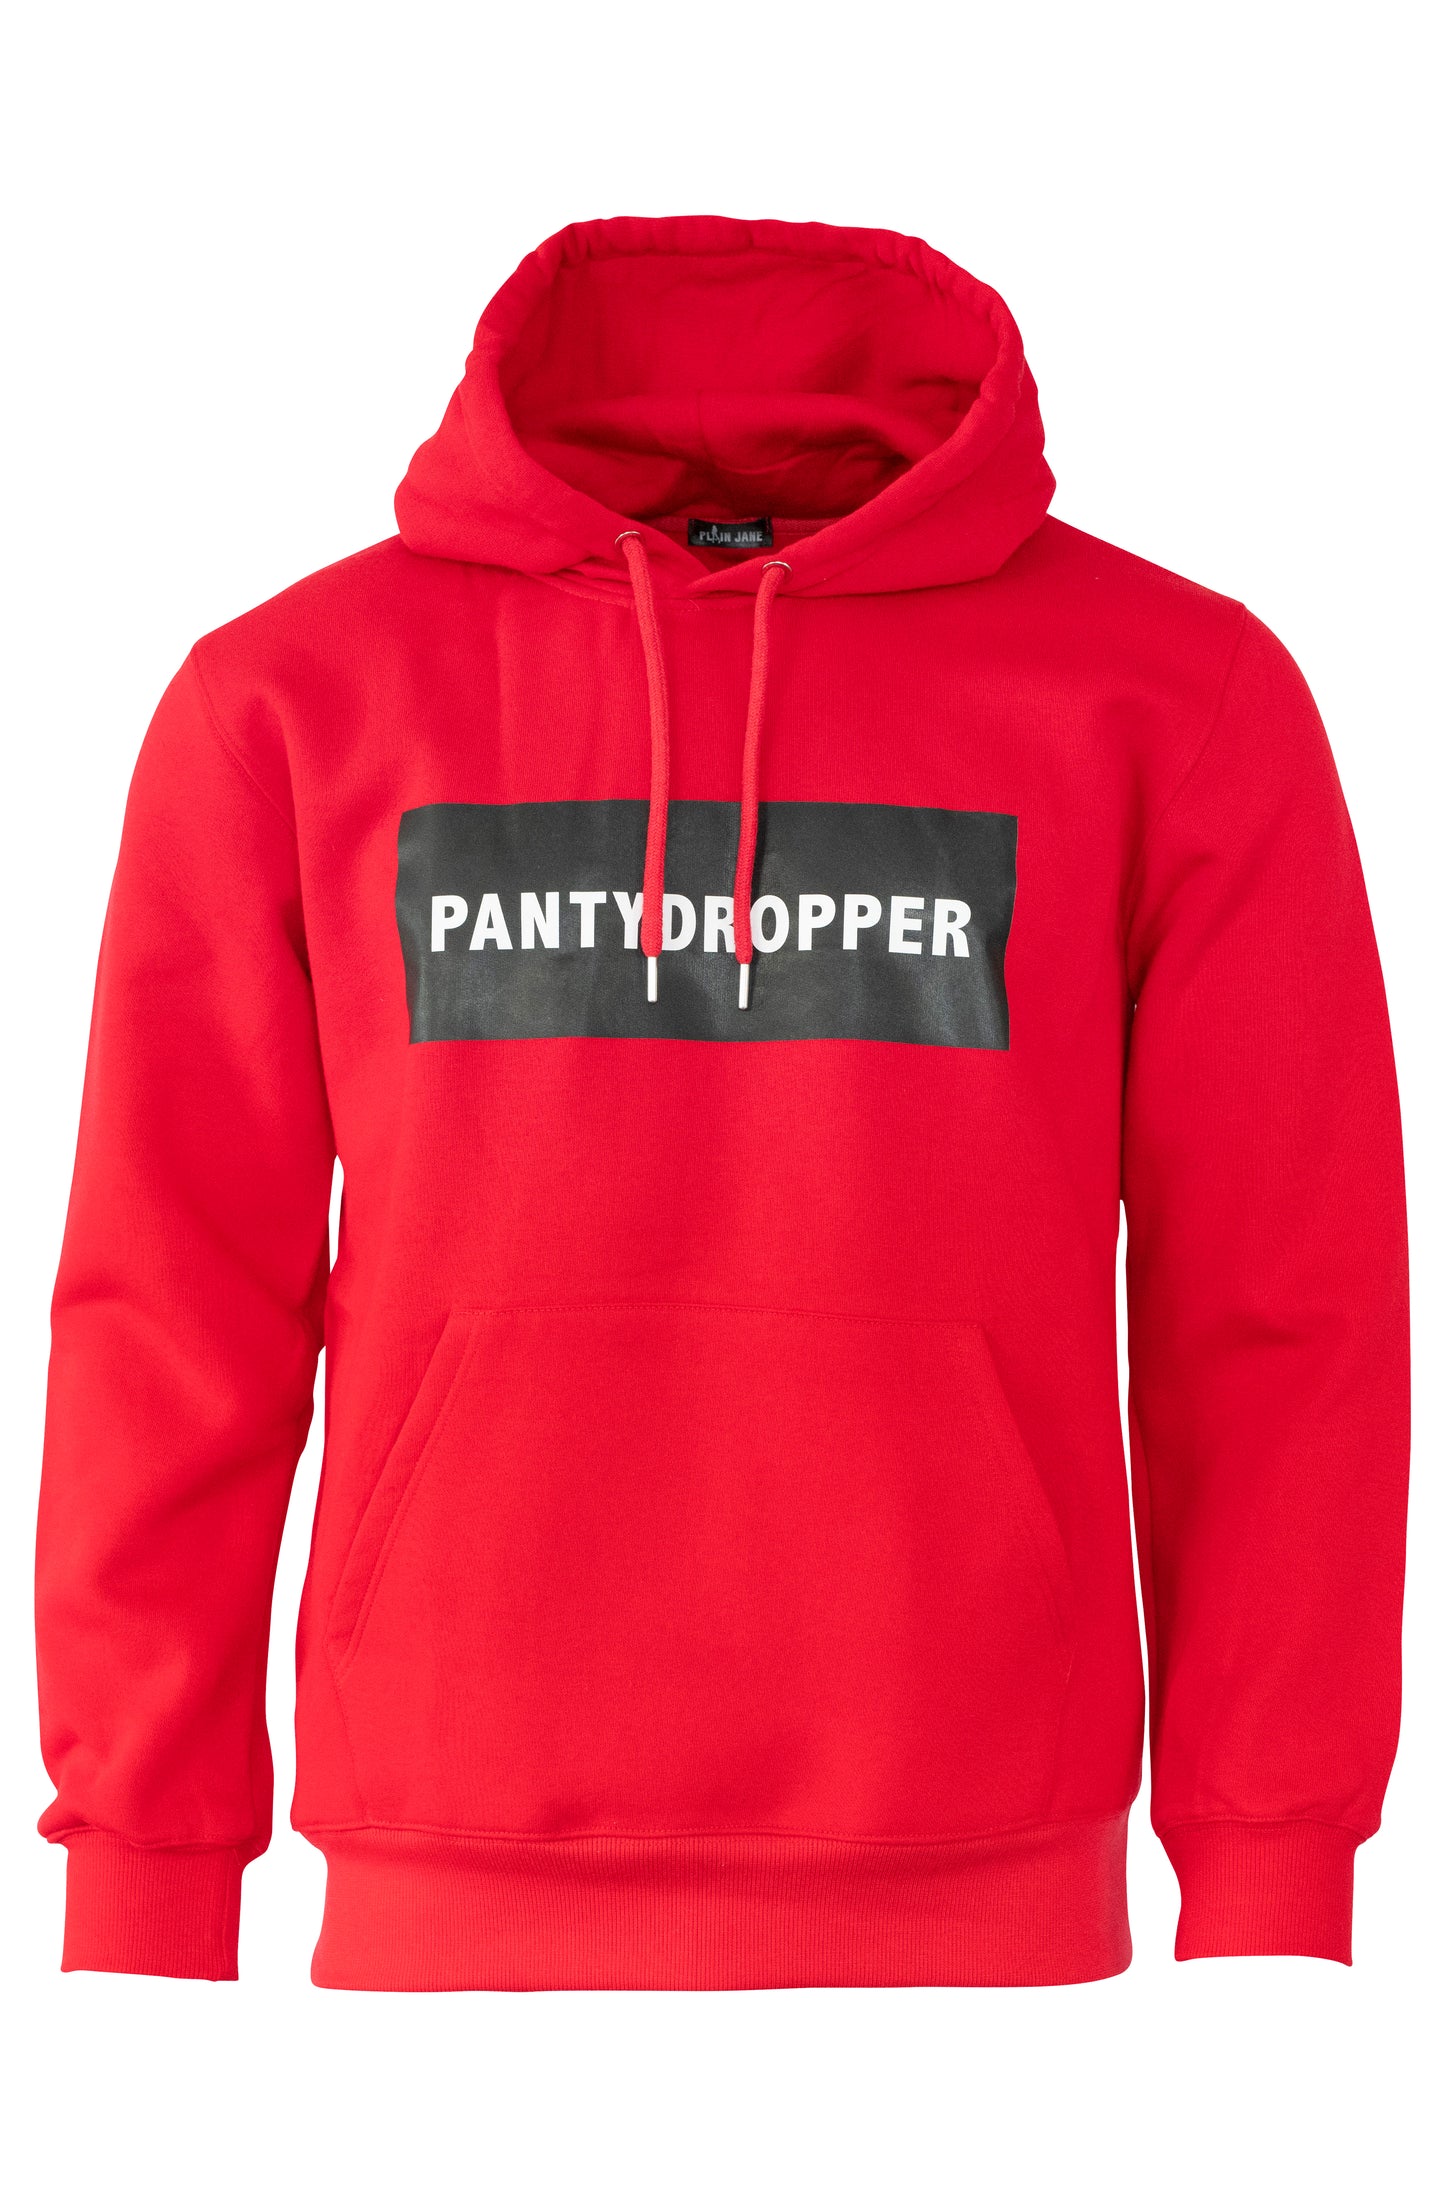 PANTYDROPPER HOODIE | RED